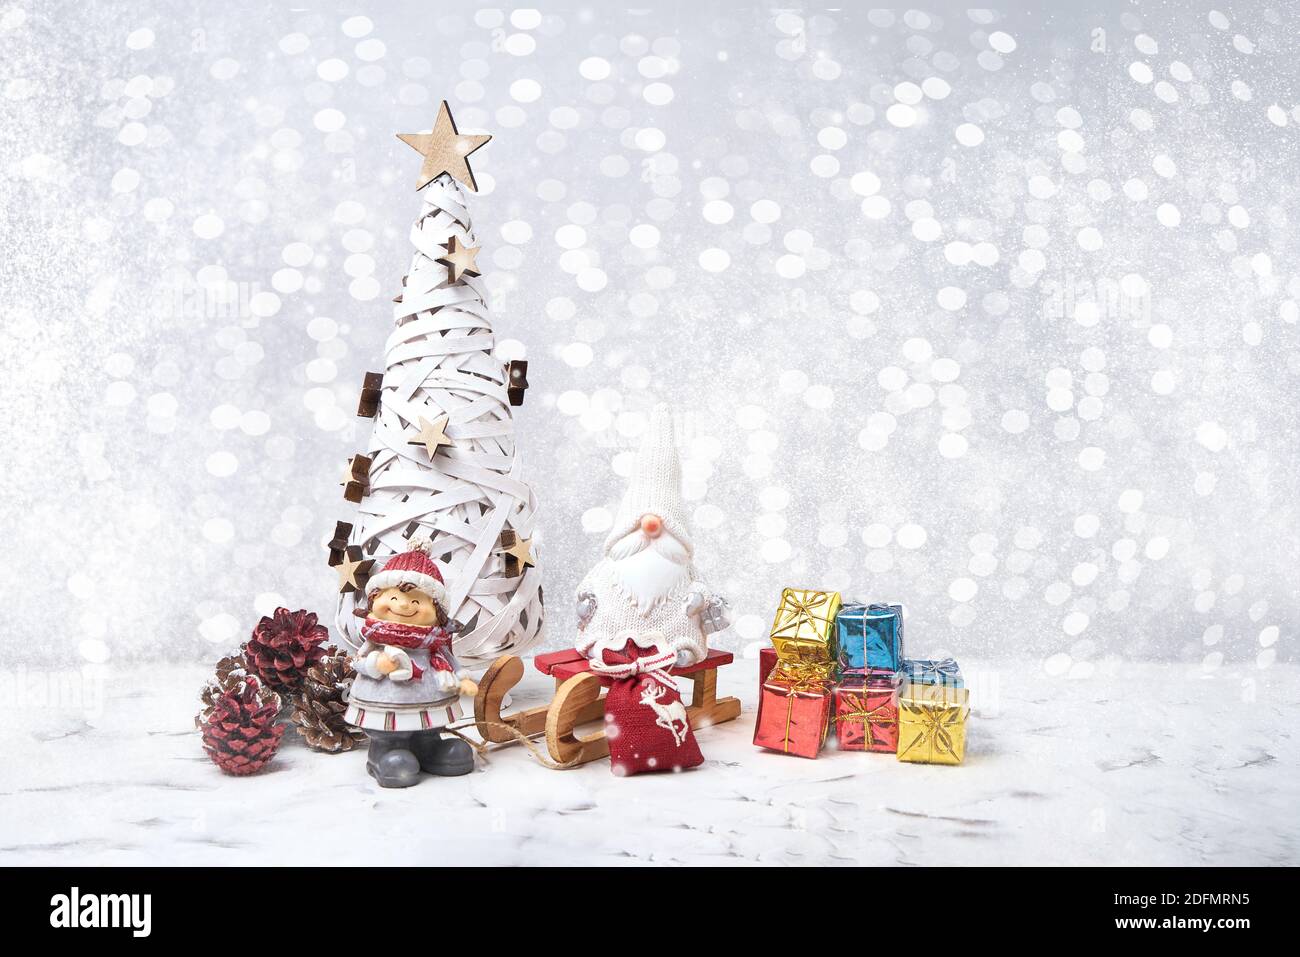 Weihnachtskarte. Weihnachtsbaum, Noel Gnome, kleine Geschenke, Schnee Textur. Weihnachtssymbol. Stockfoto